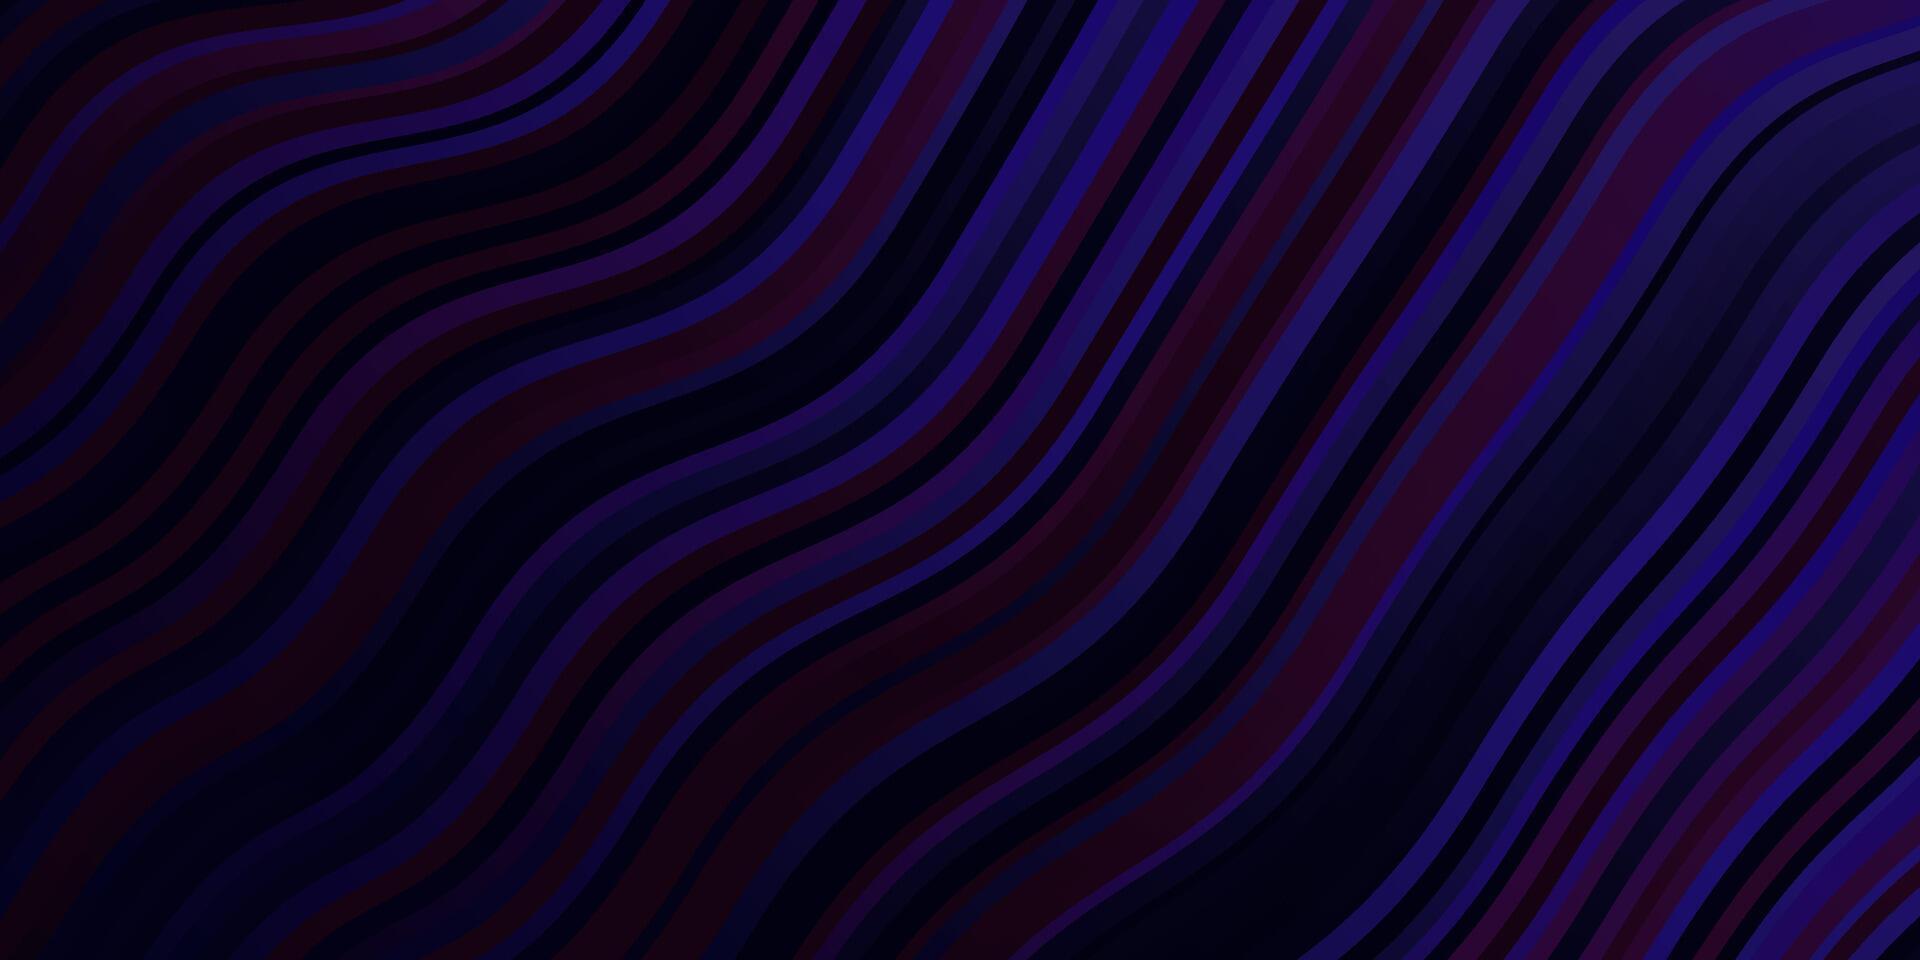 Fondo de vector púrpura oscuro con líneas torcidas.